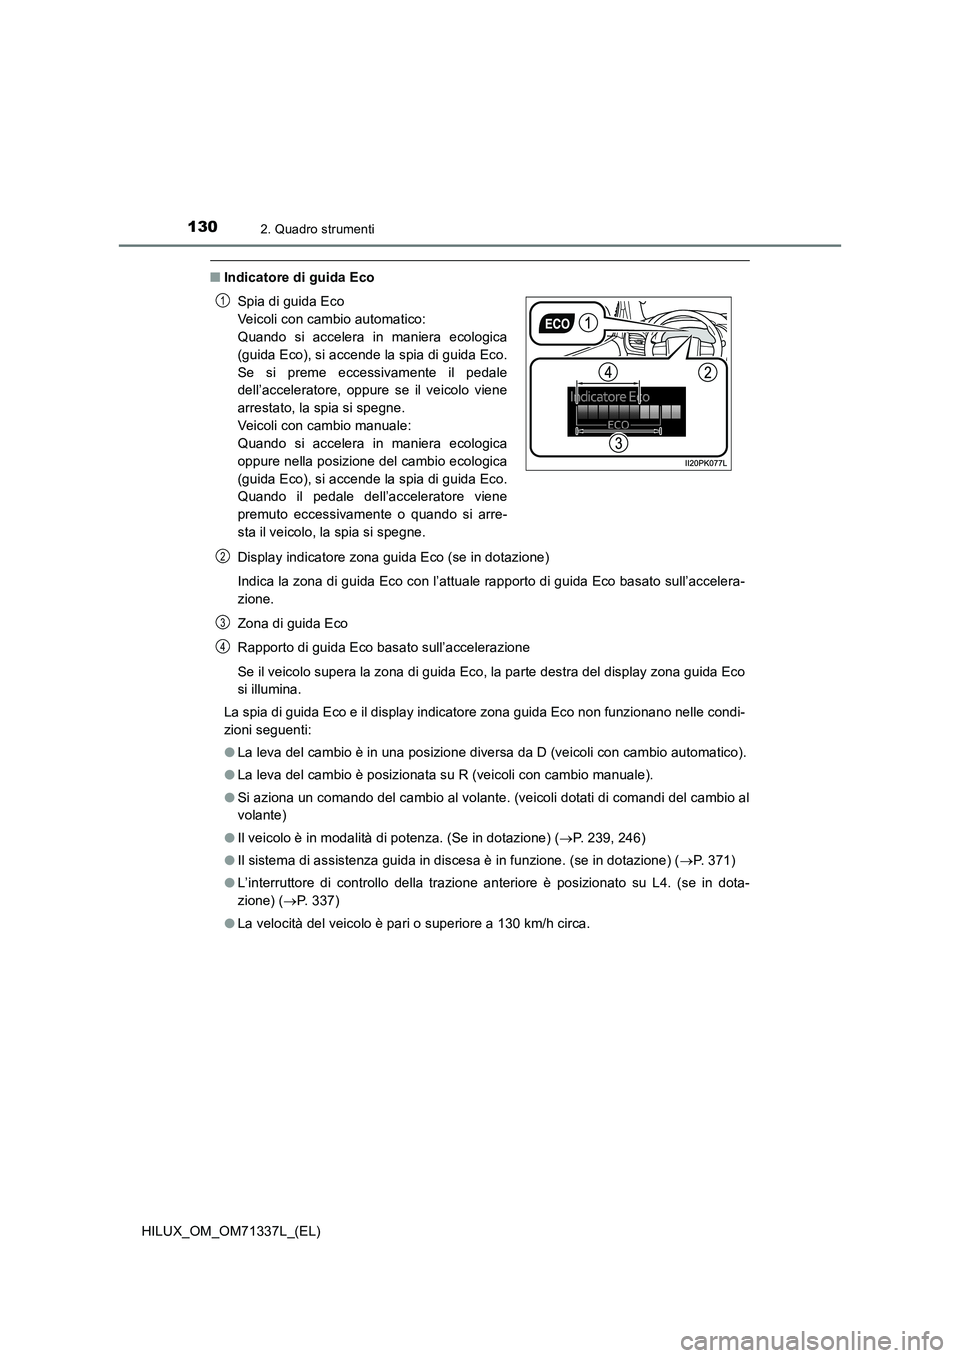 TOYOTA HILUX 2021  Manuale duso (in Italian) 1302. Quadro strumenti
HILUX_OM_OM71337L_(EL)
�QIndicatore di guida Eco
Display indicatore zona guida Eco (se in dotazione) 
Indica la zona di guida Eco con l’attuale rapporto di guida Eco basato su